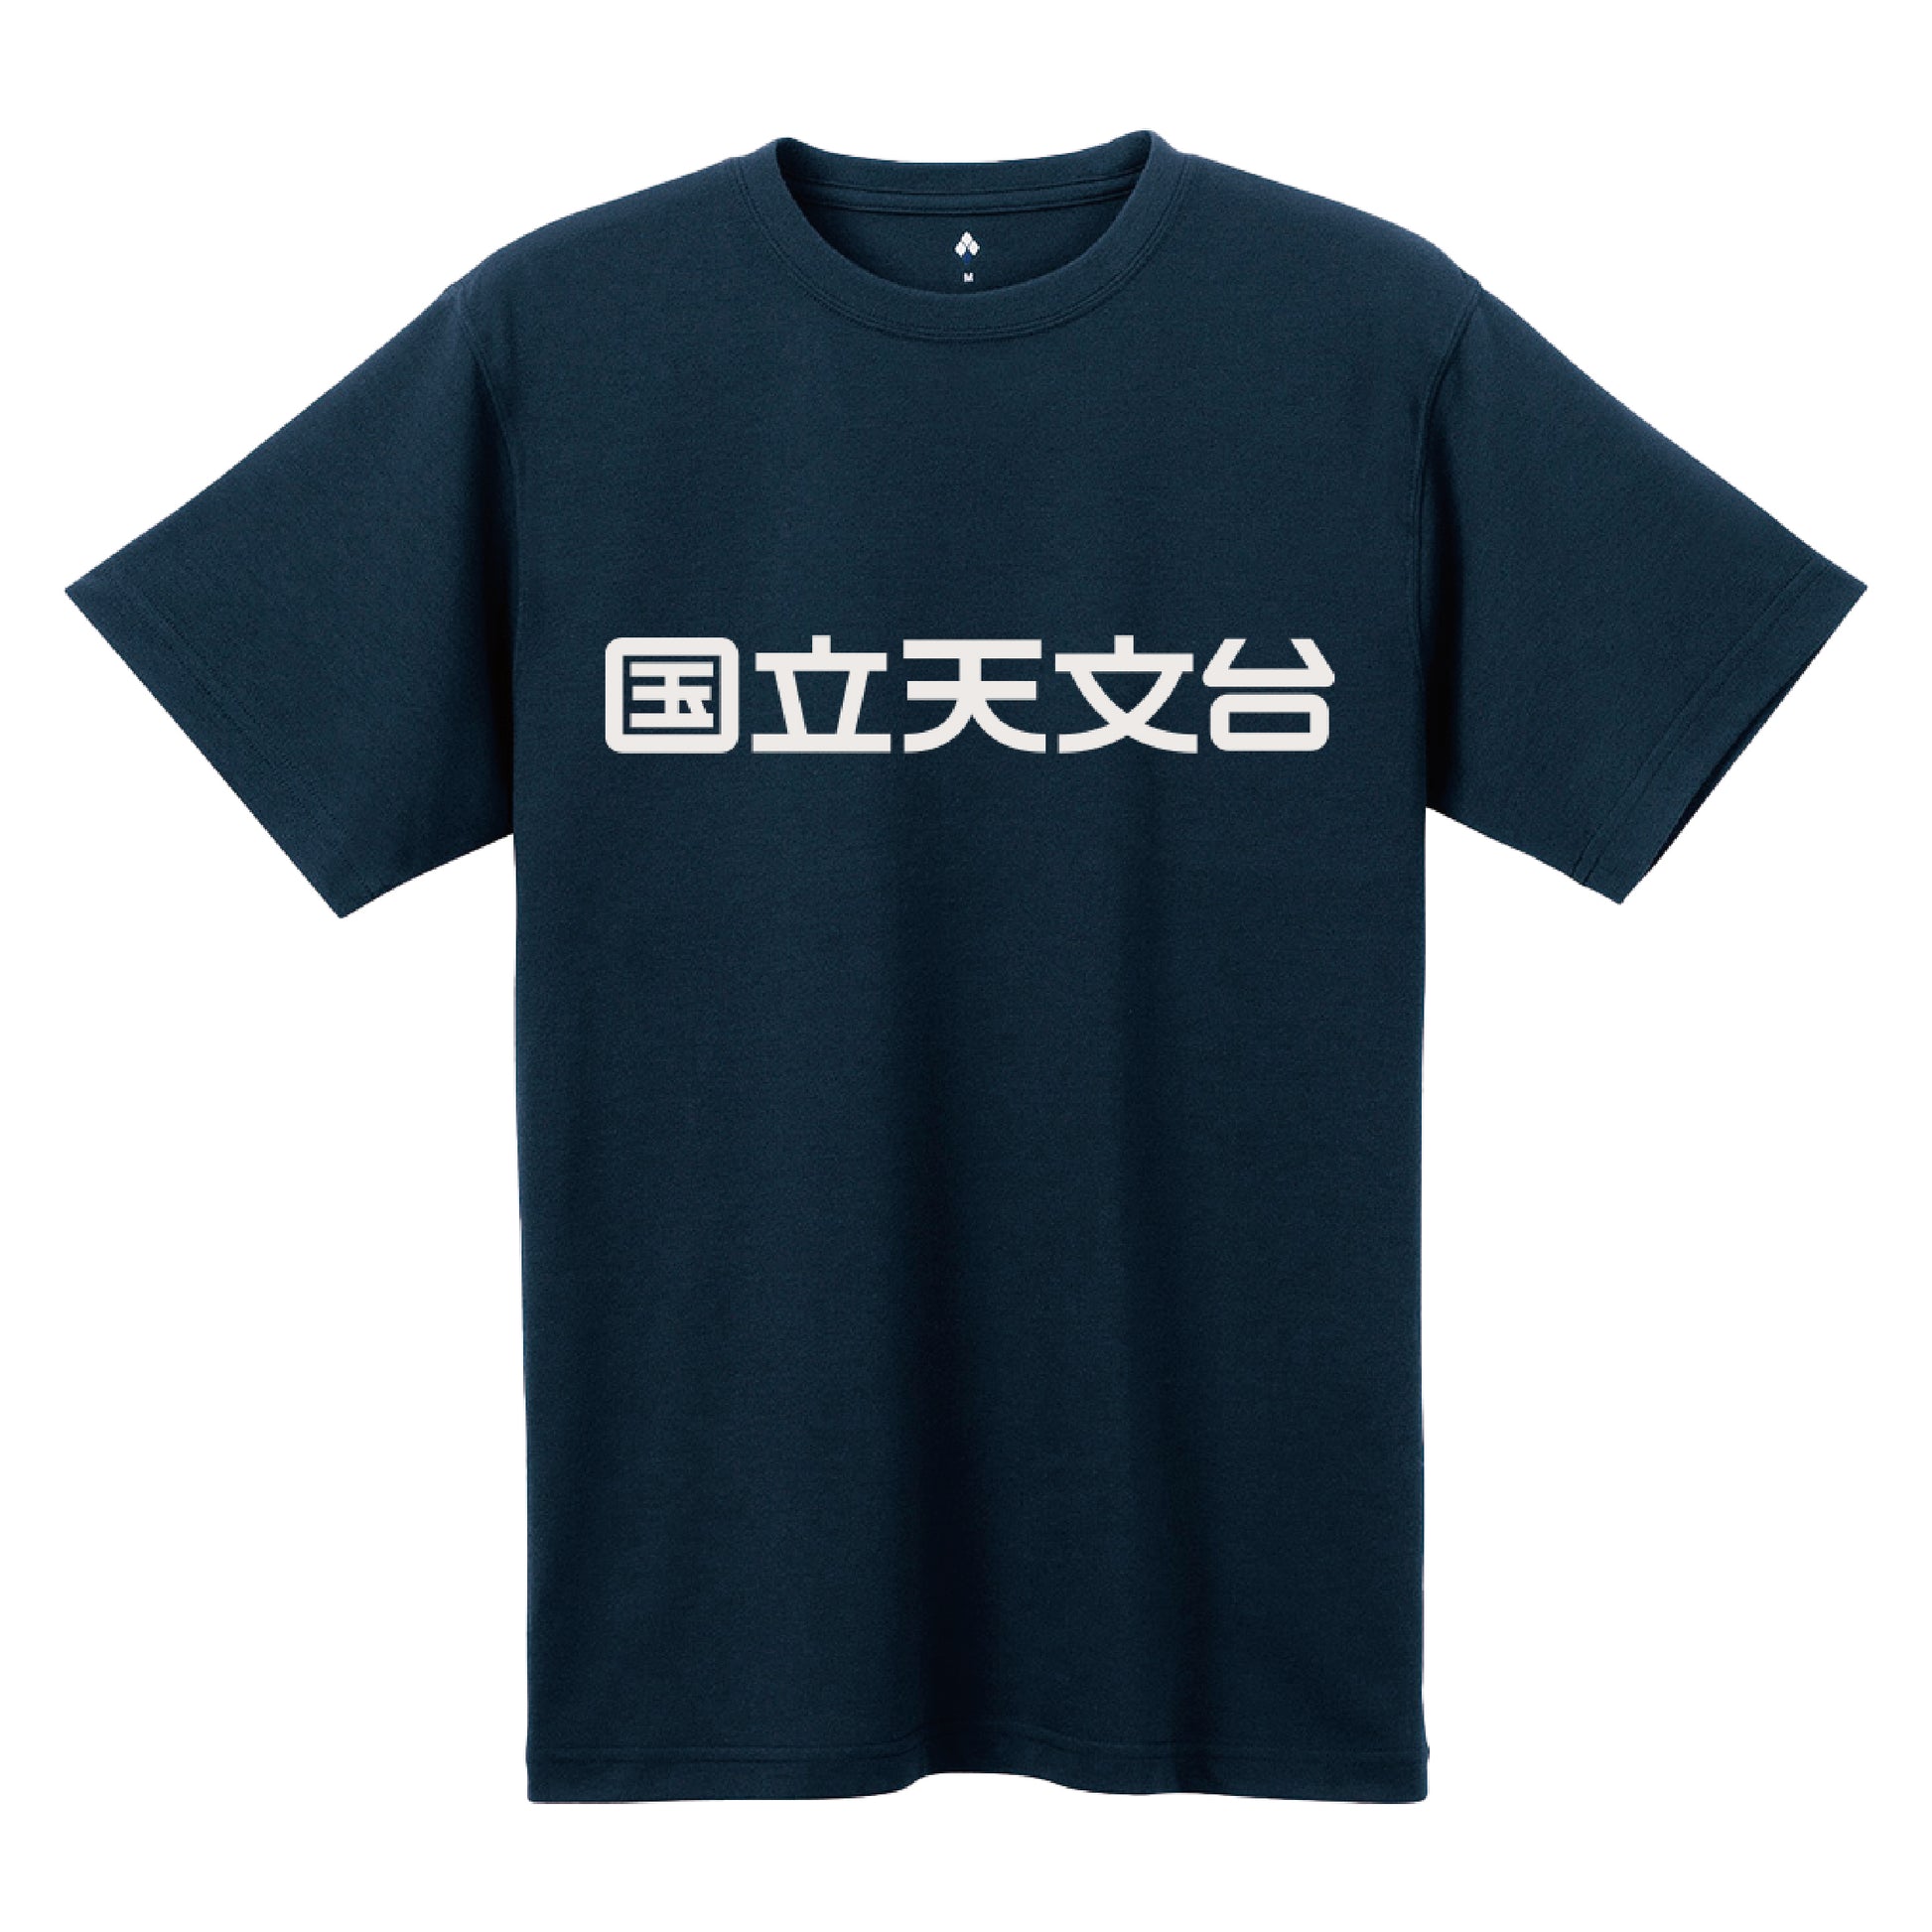 国立天文台 NAOJ漢字 ロゴマーク WIC. Tシャツ ネイビー S 00